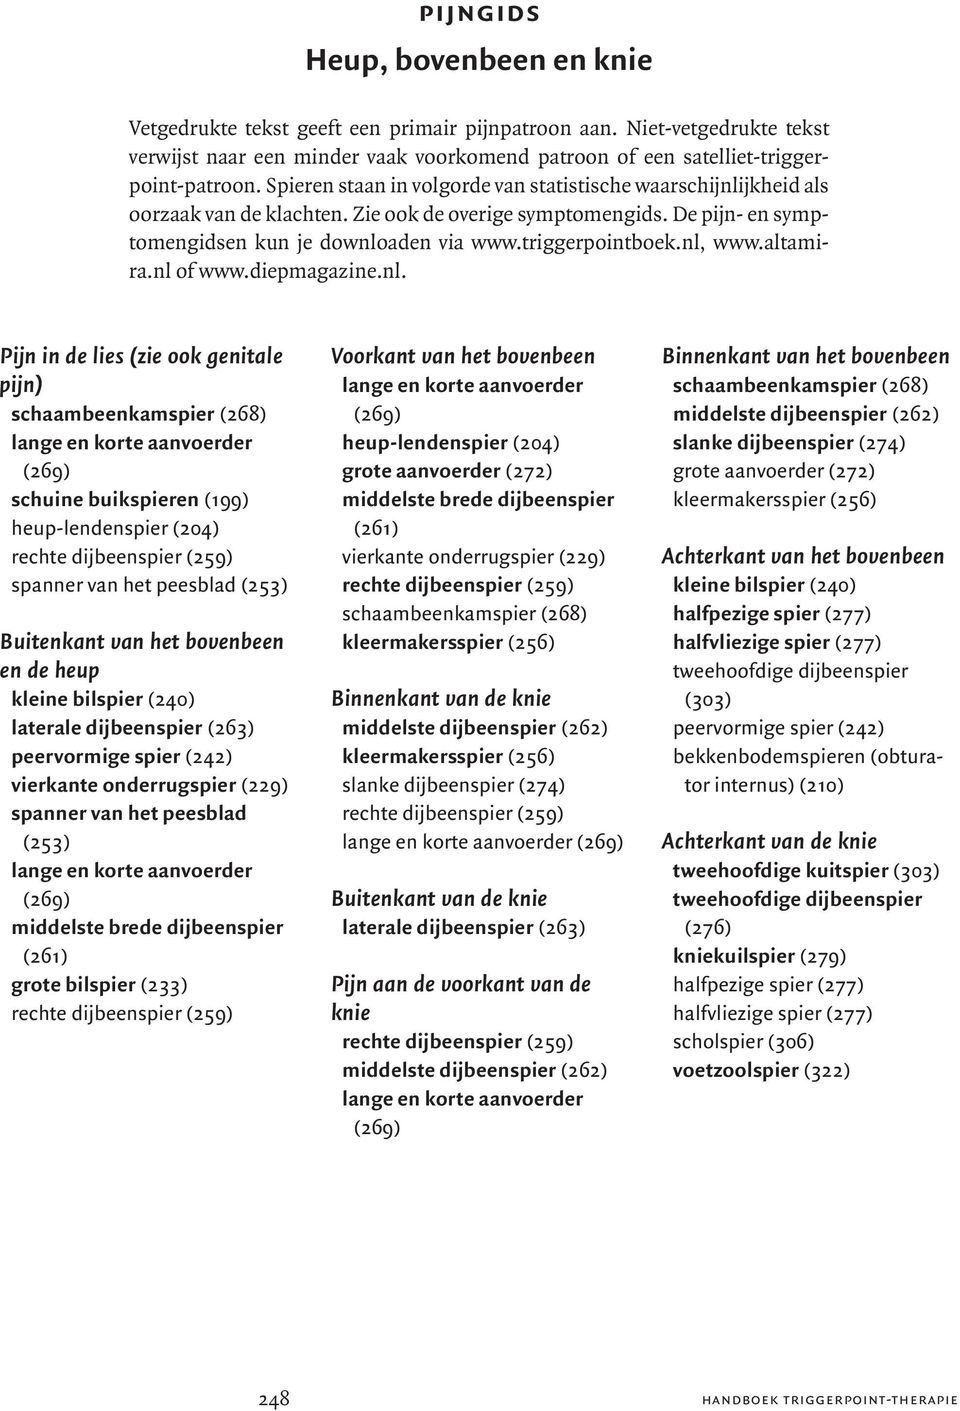 nl, www.altamira.nl of www.diepmagazine.nl. Pijn in de lies (zie ook genitale pijn) schuine buikspieren (199) Buitenkant van het bovenbeen en de heup spanner van het peesblad (253) grote bilspier